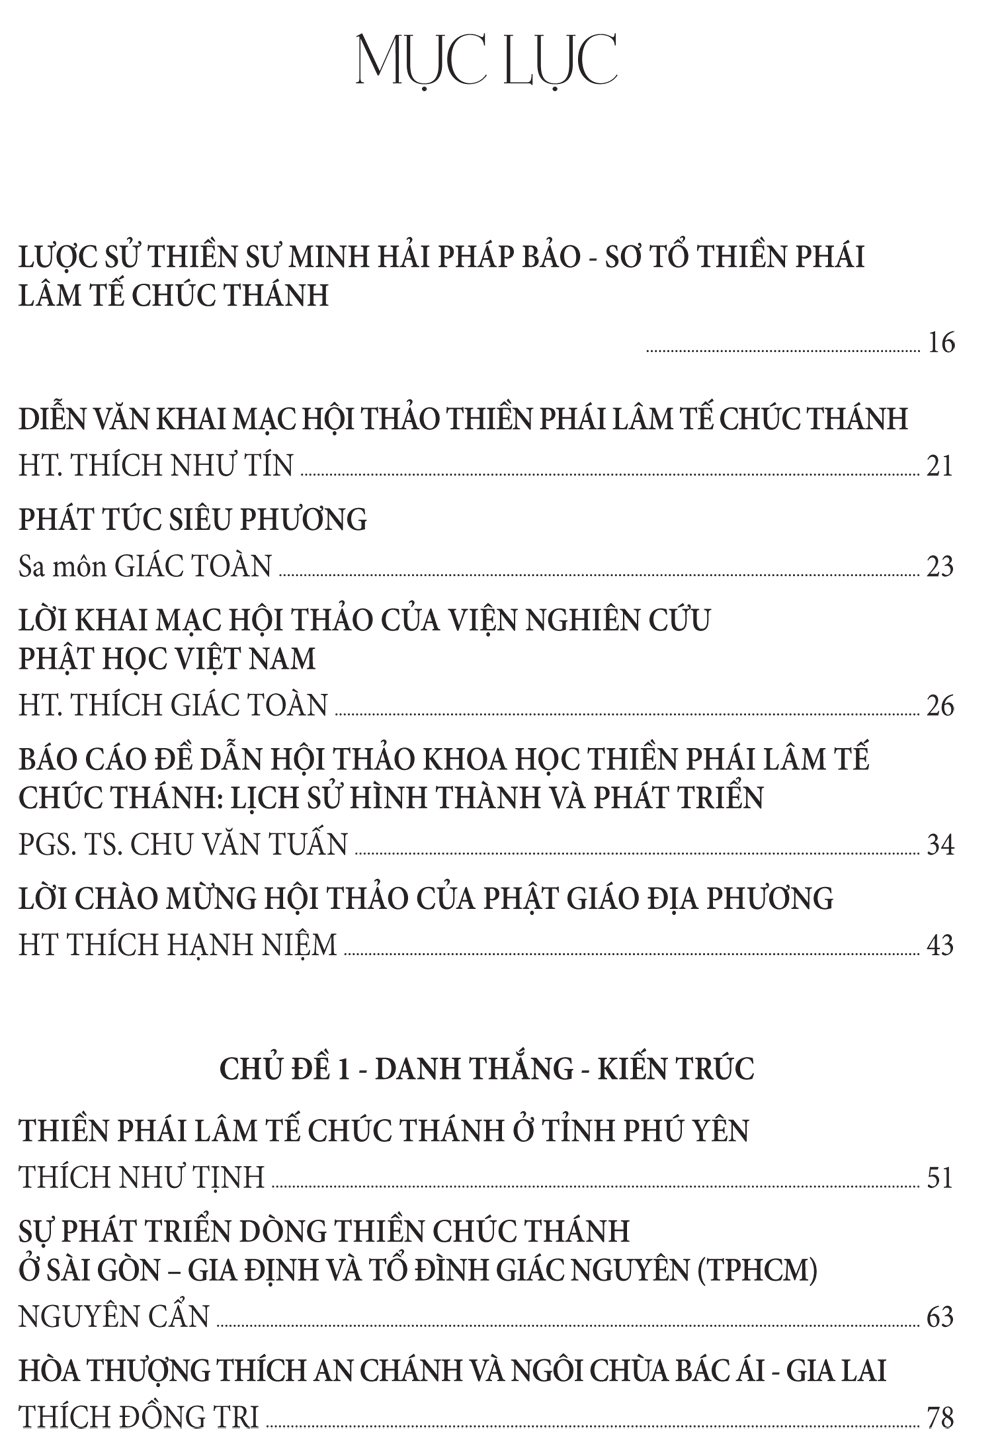 Thien Phai Chuc Thanh-1